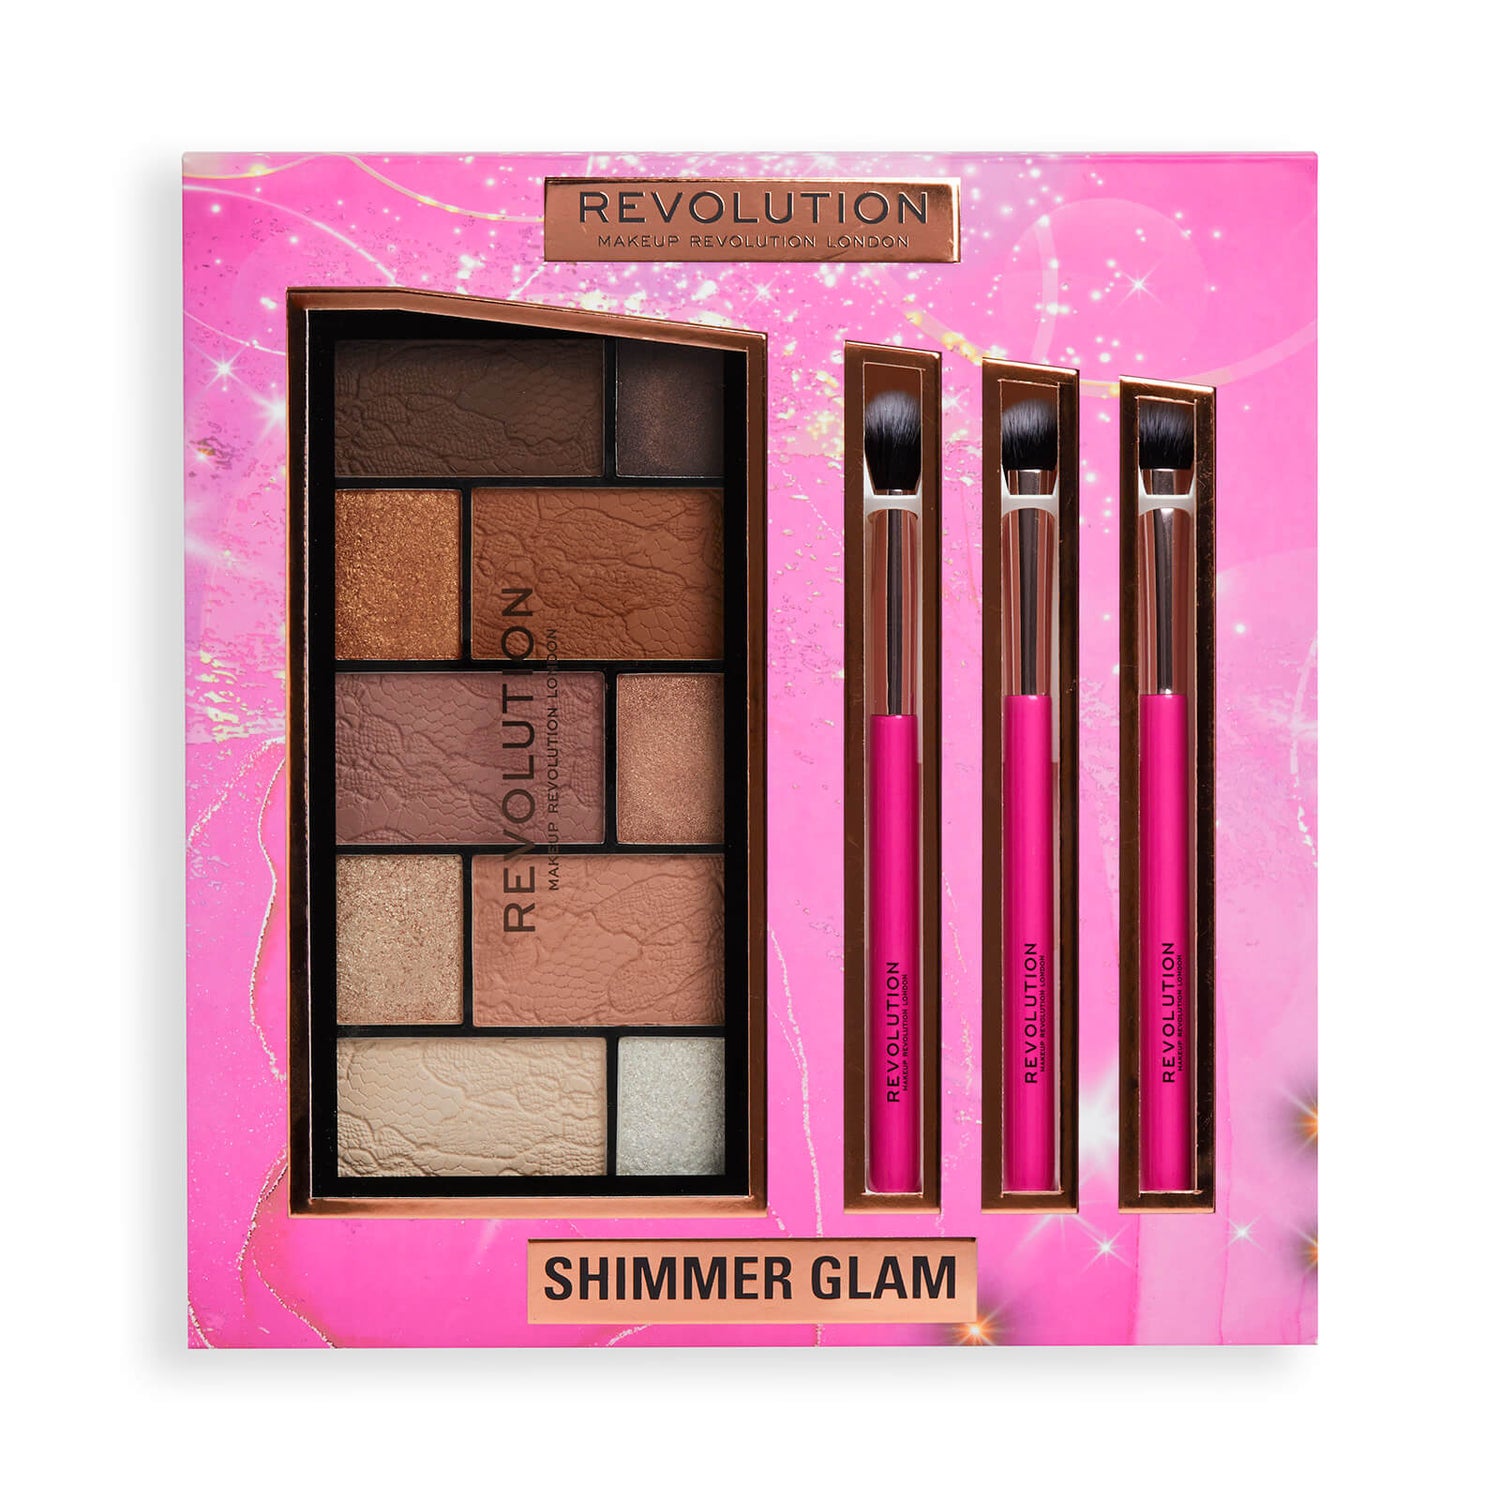 Revolution Shimmer Glam Eye Set Gift Set (Worth $23.00)